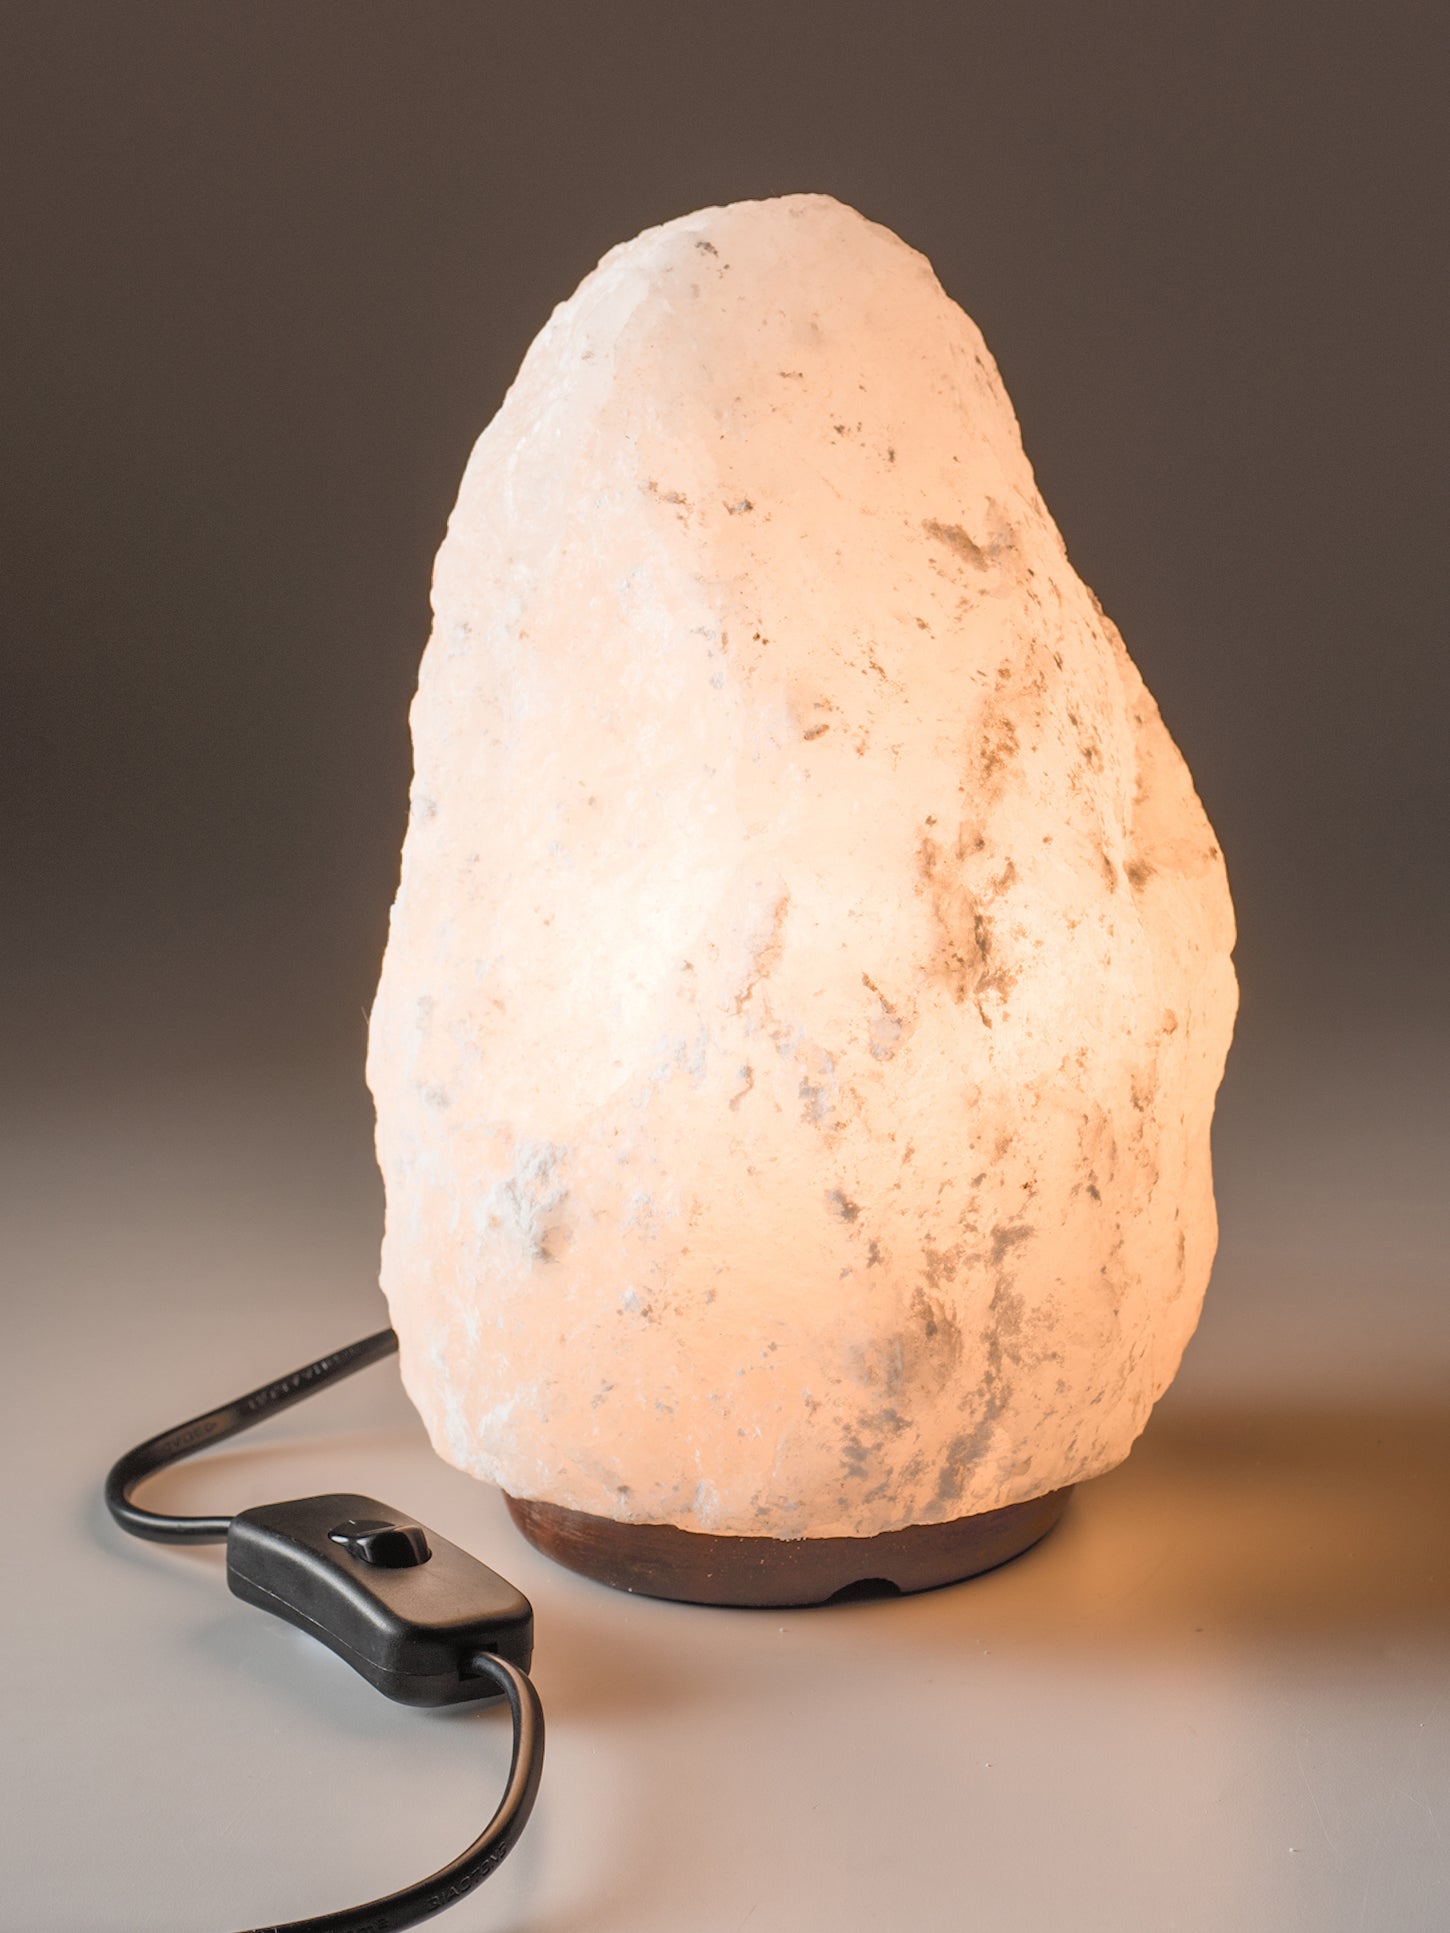 Namaste White Himalayan Salt Lamp